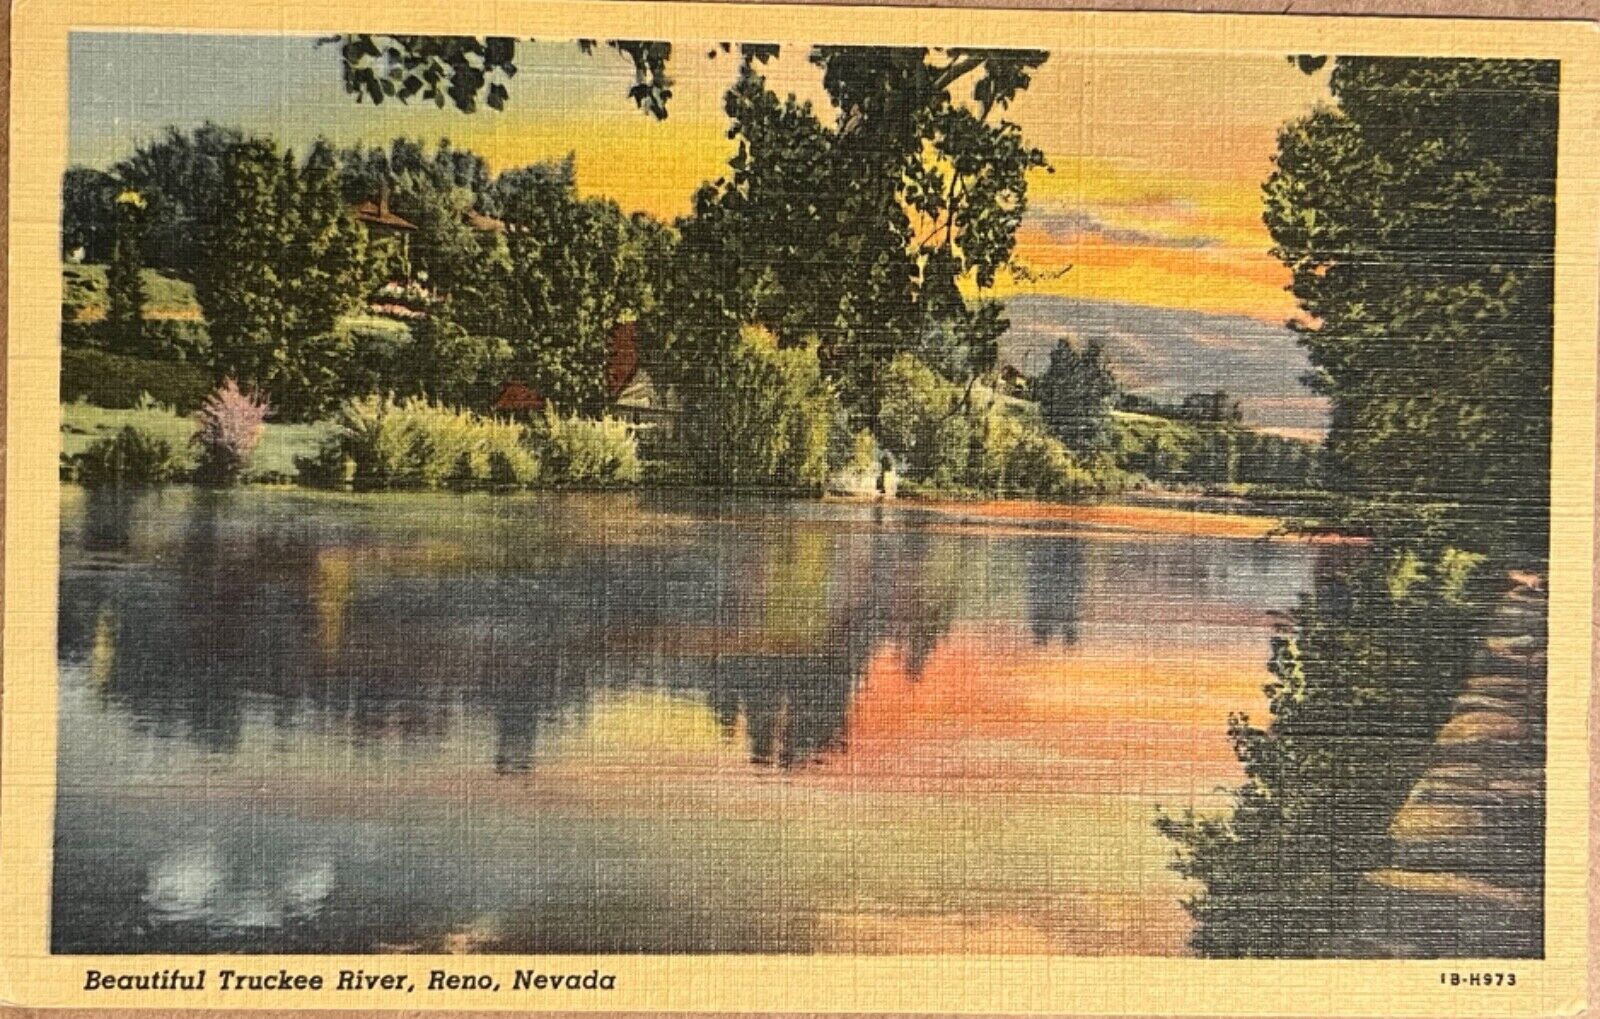 Reno Nevada Truckee River Scenic View Postcard 1941